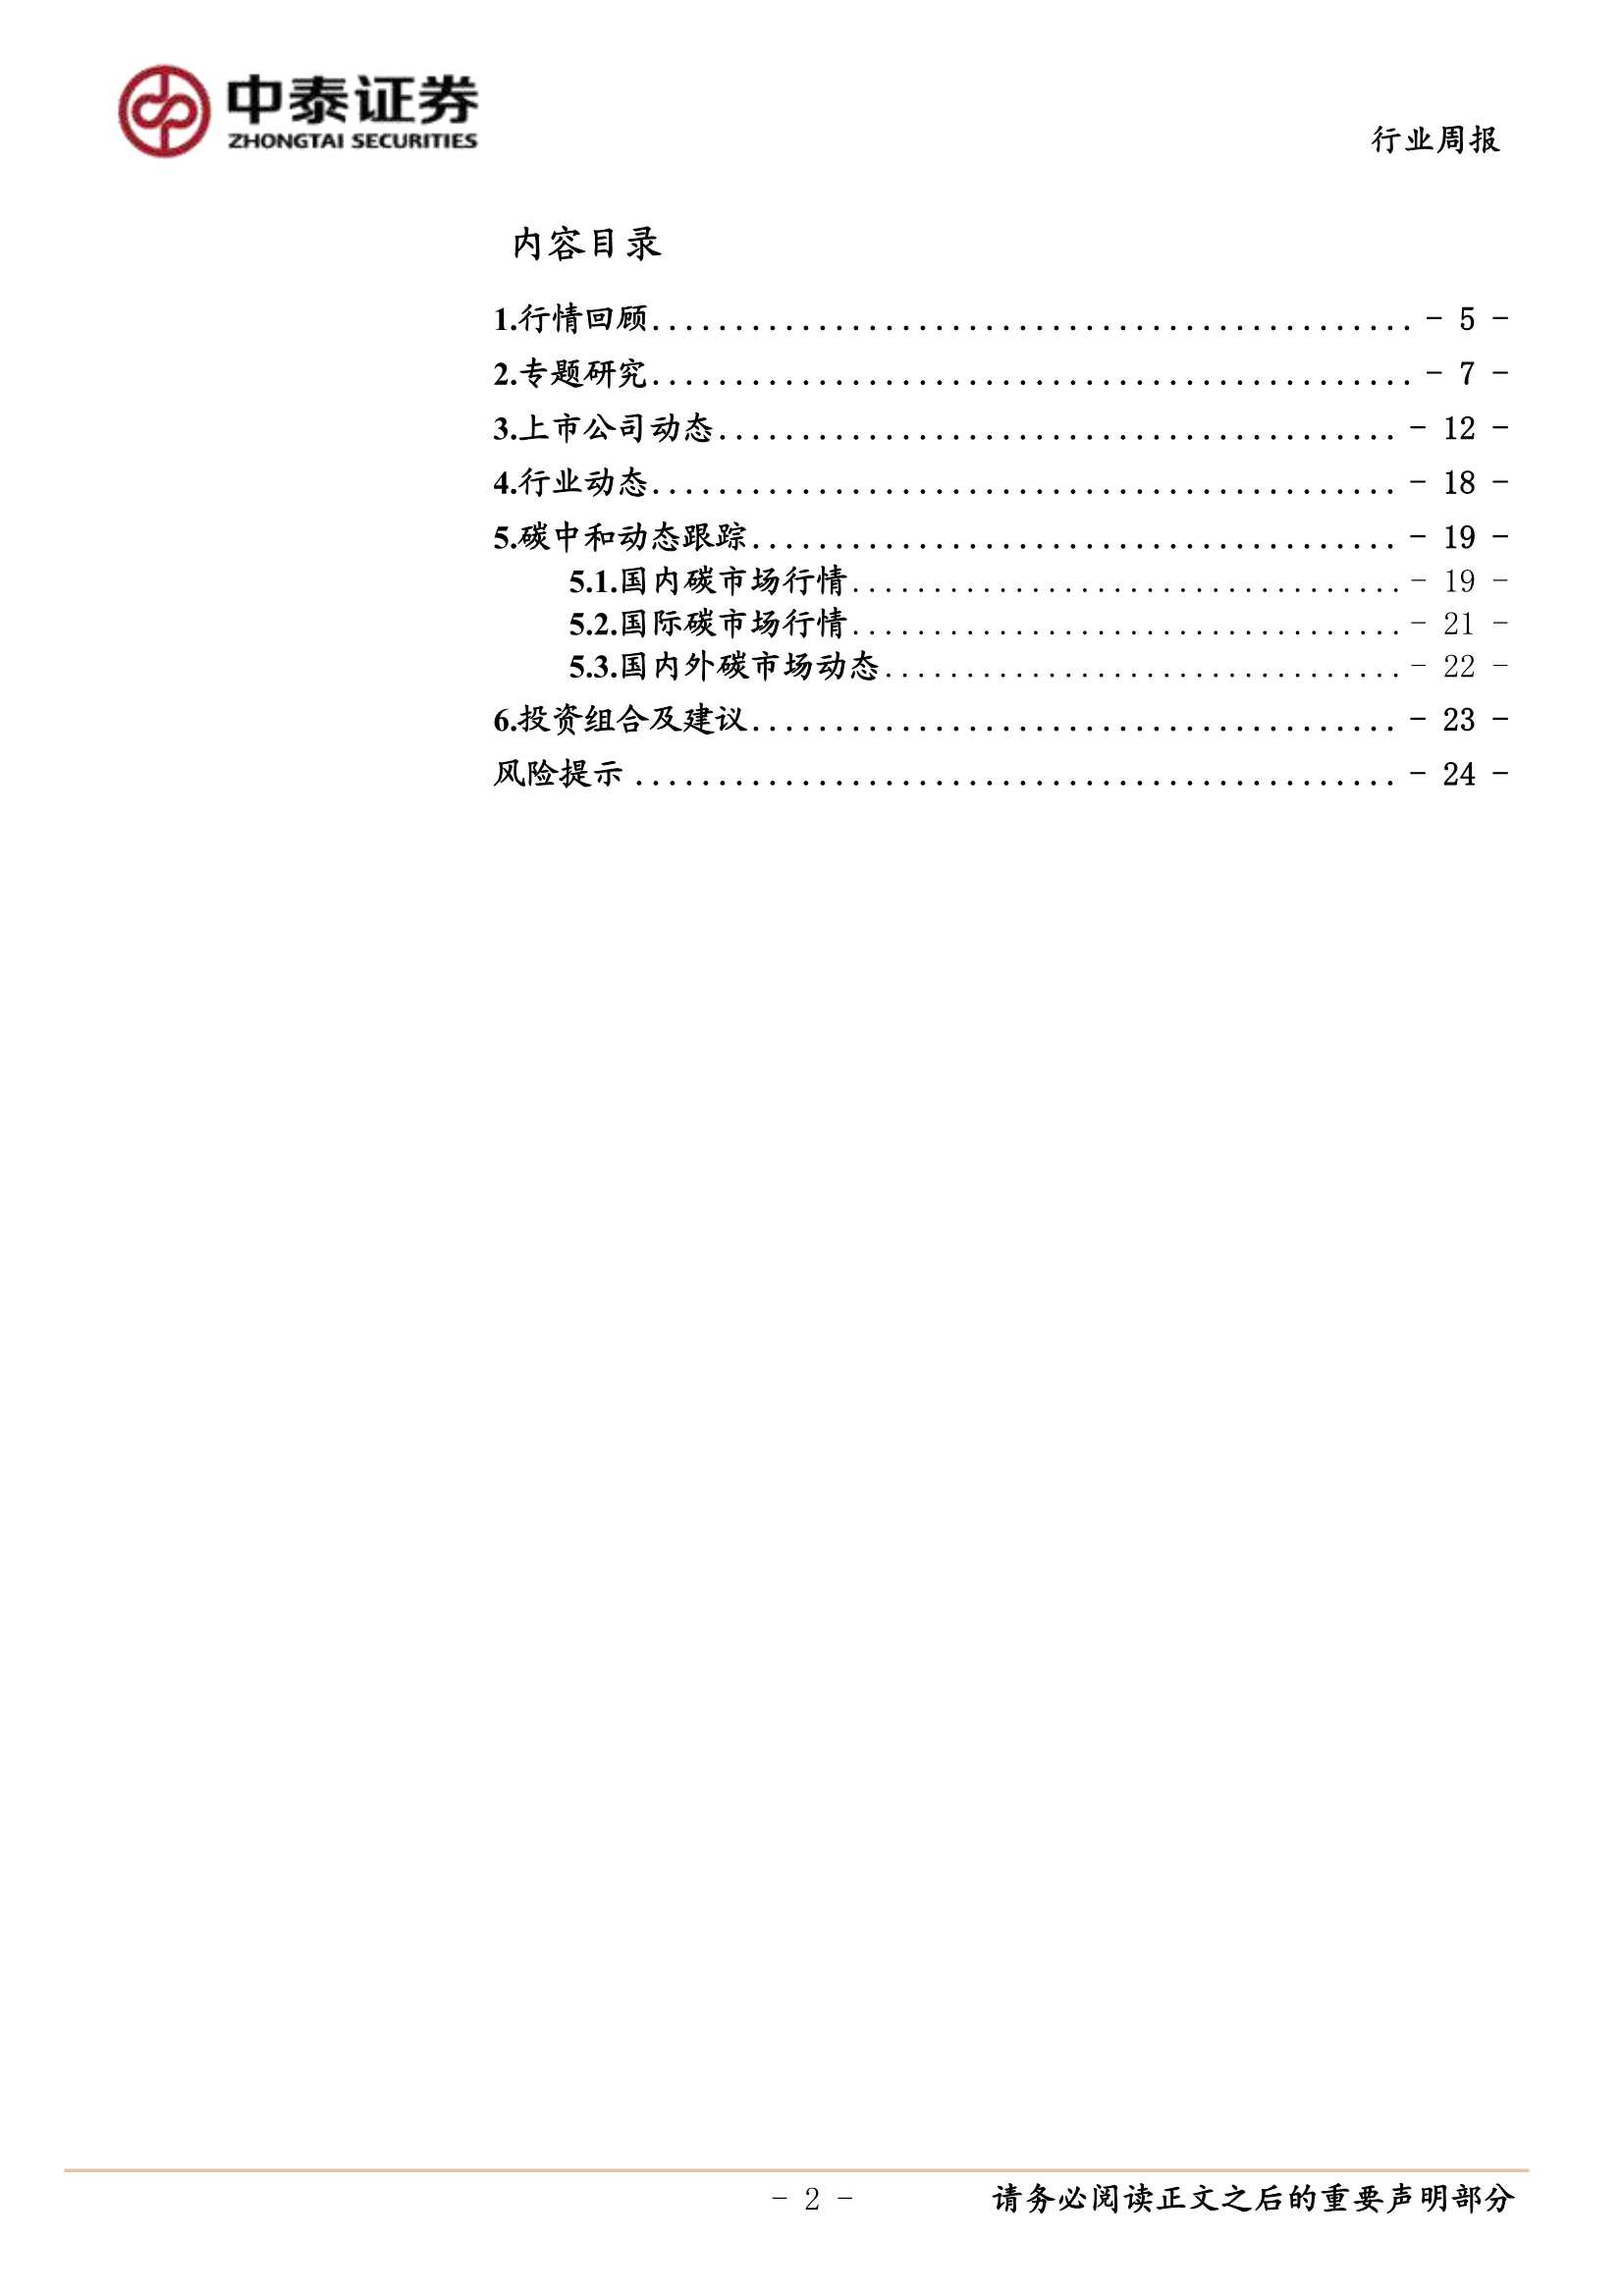 中泰证券-环保及公用事业行业-20211205-25页